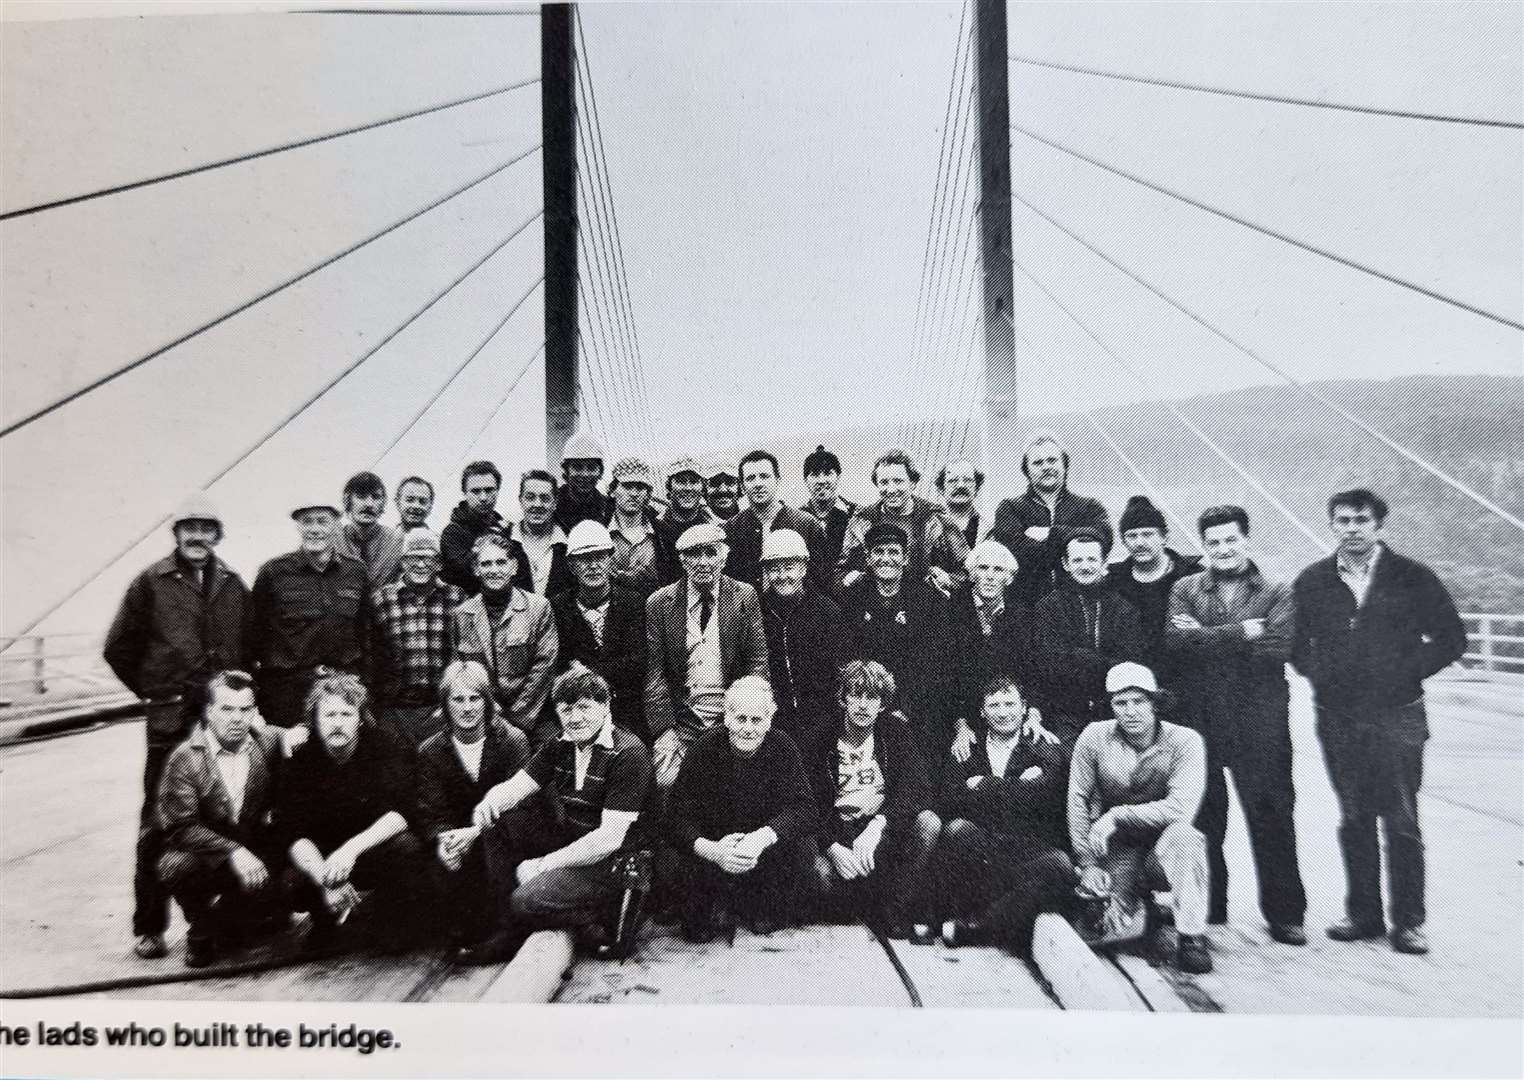 Steel erectors who worked on the bridge.